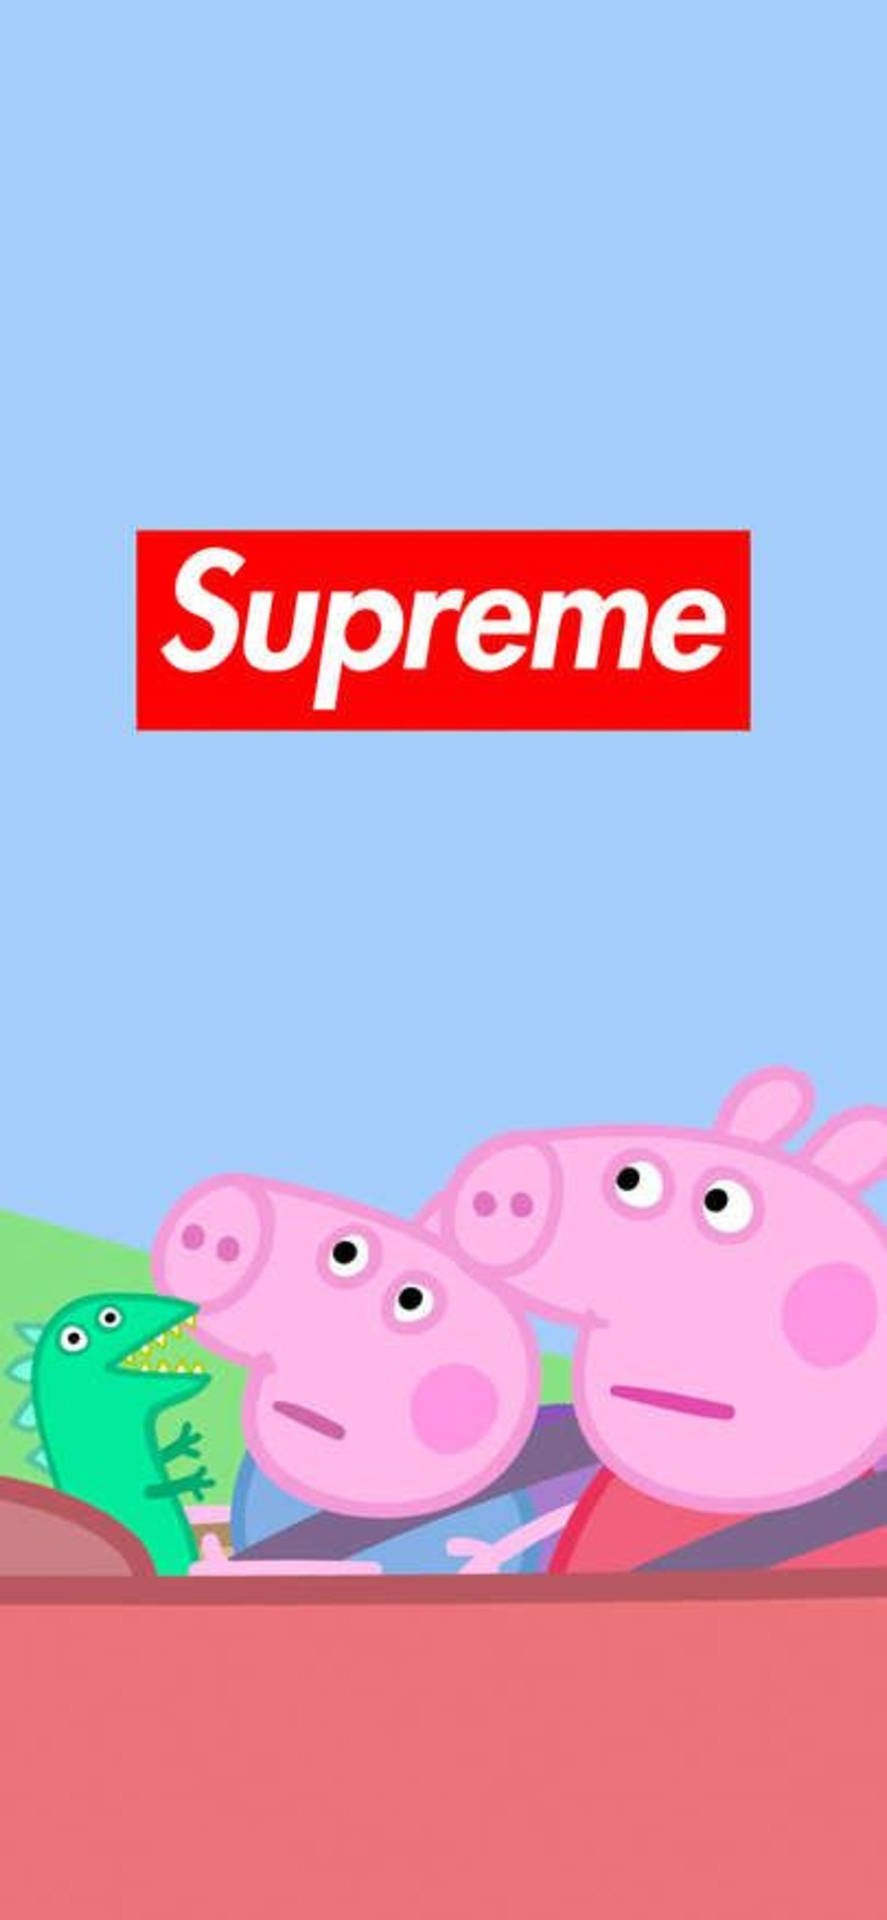 Peppa Pig Supreme Phone